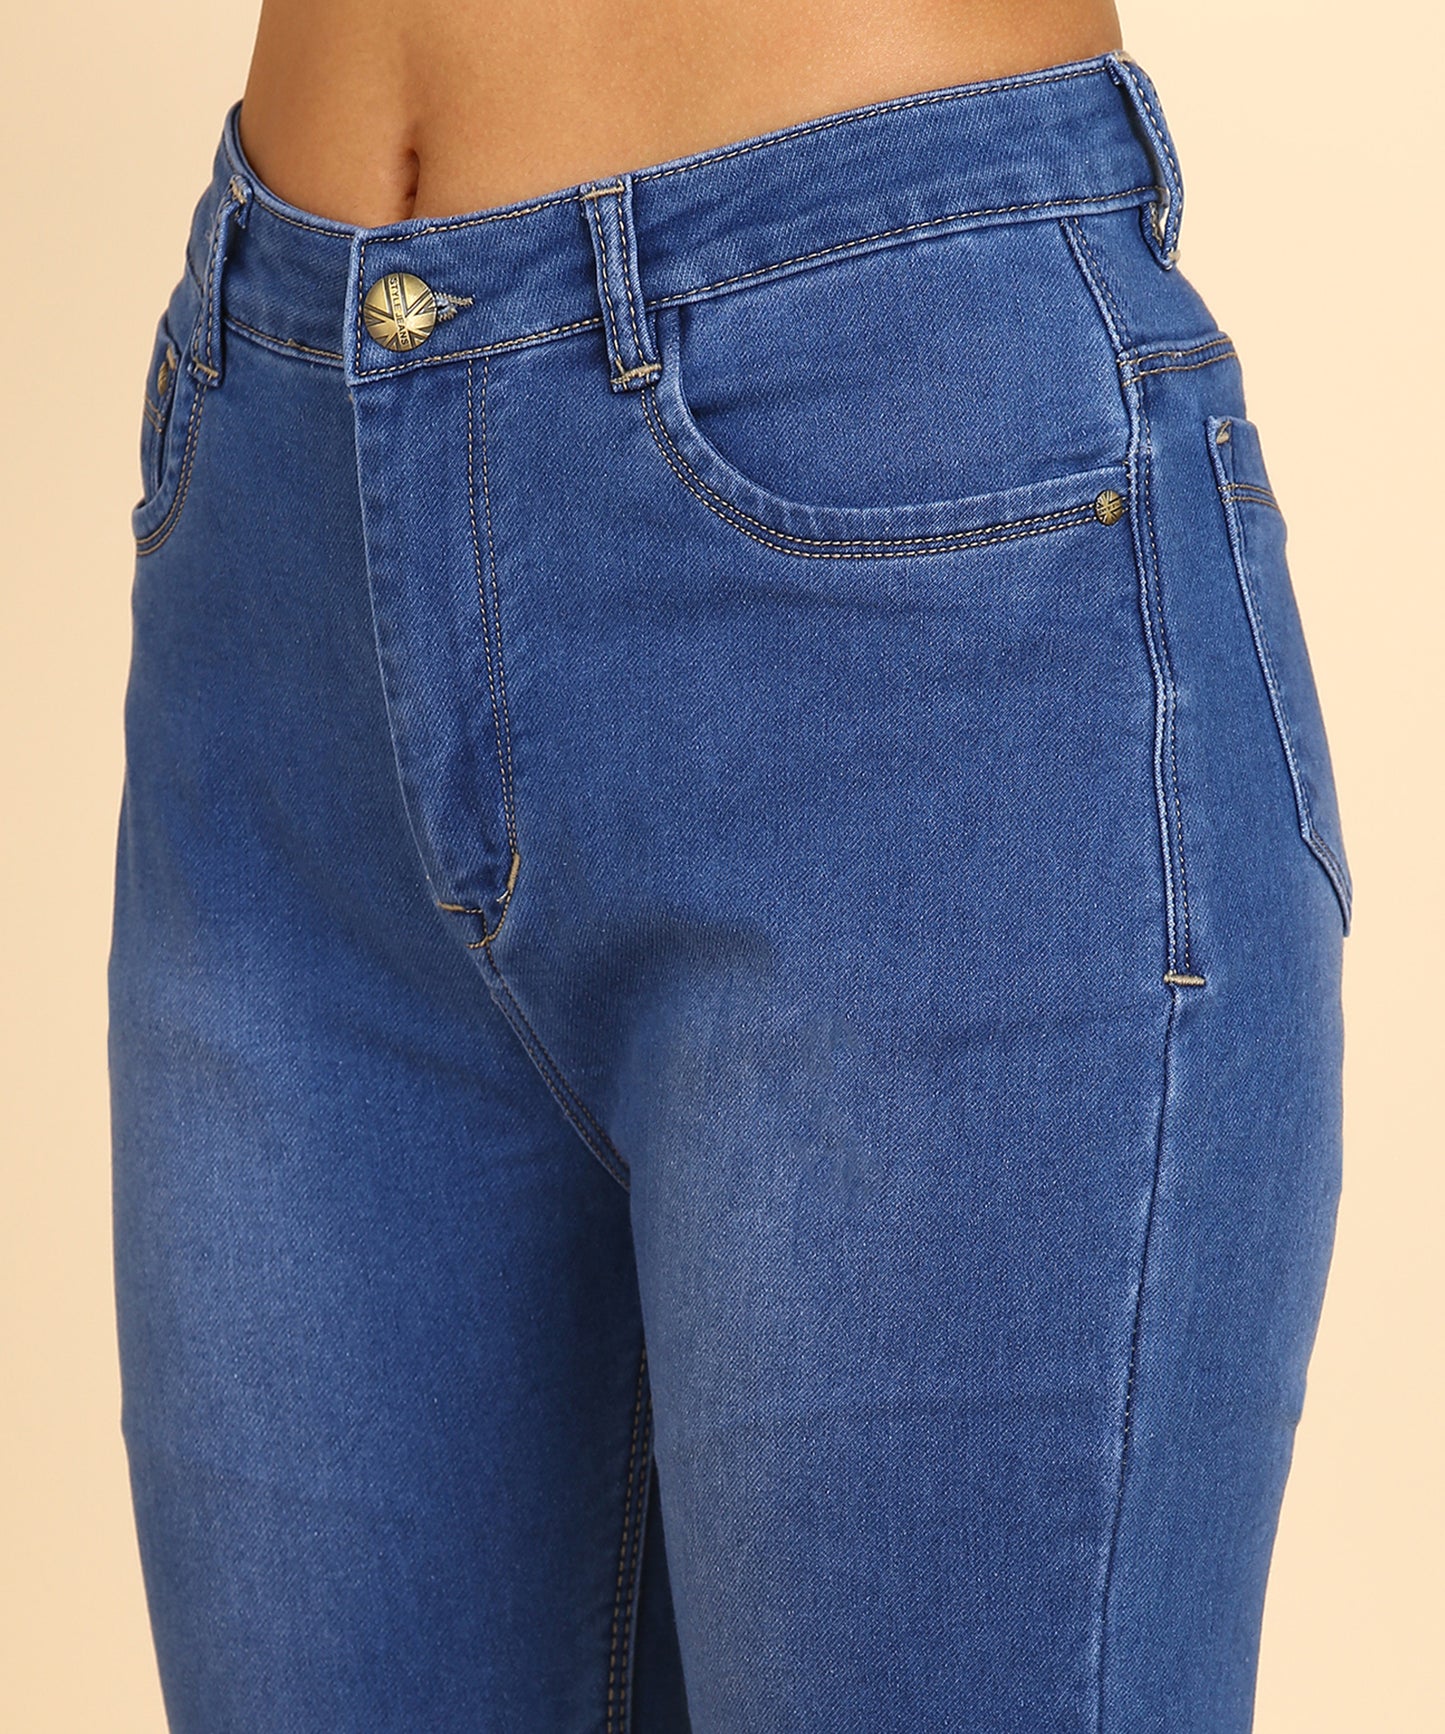 Worn Denim Cotton Lycra High Waist Regular Jeans for Women-1596